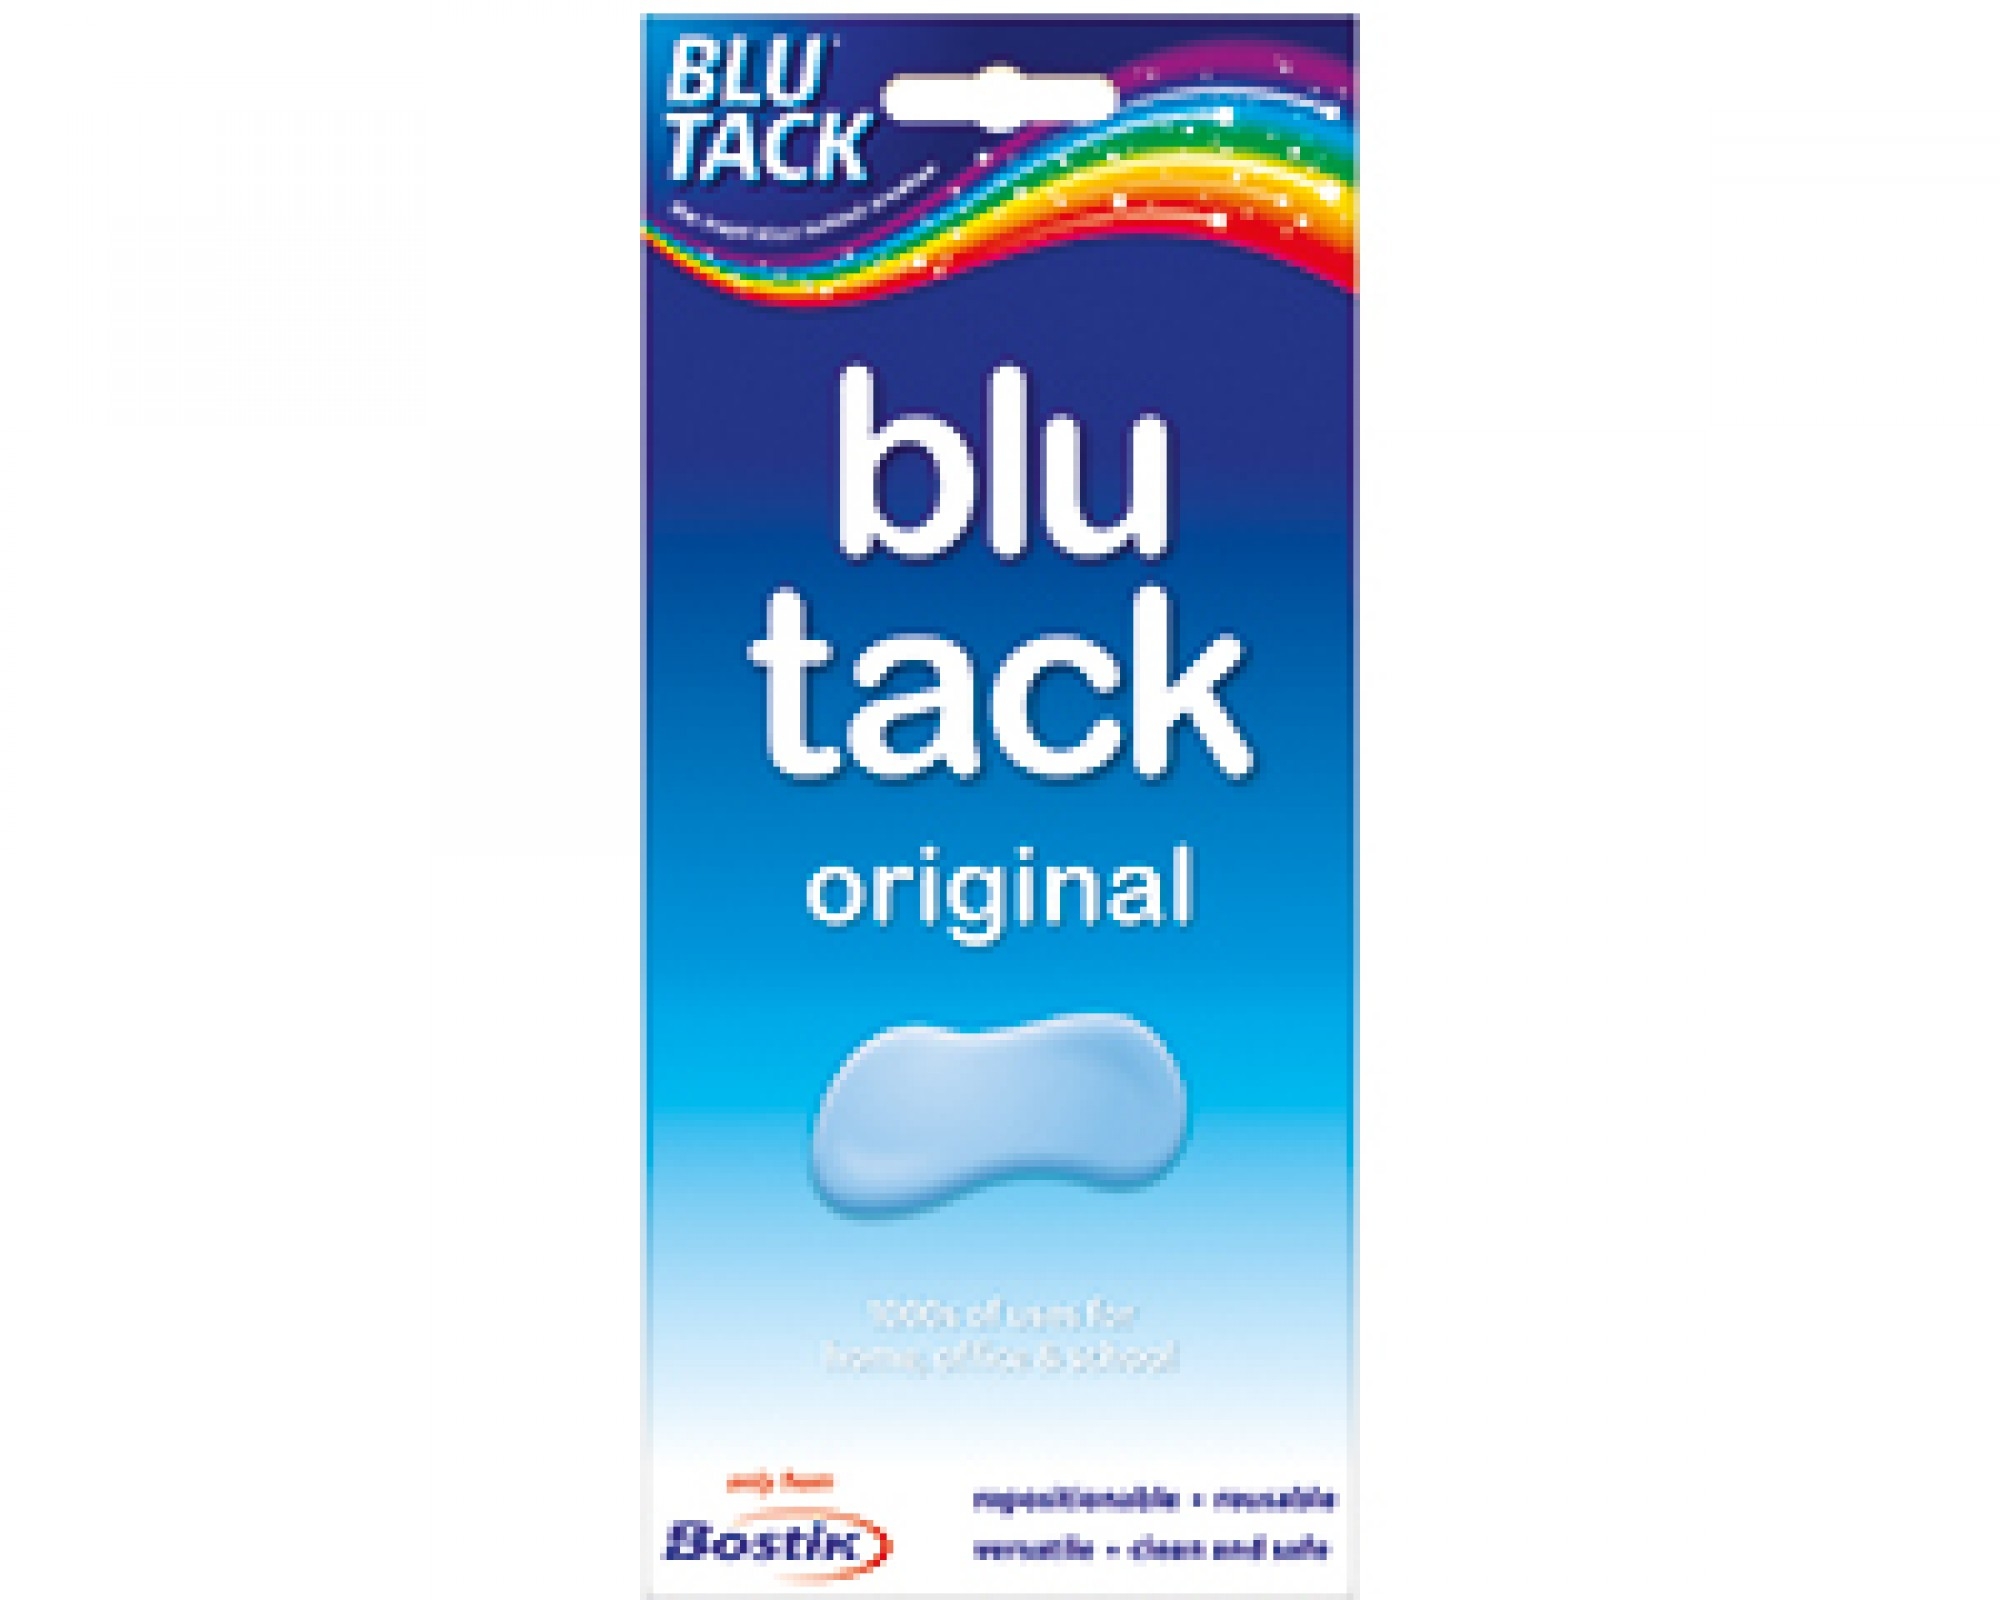 Blue sticky tack for hair - Ulta.com - wide 7